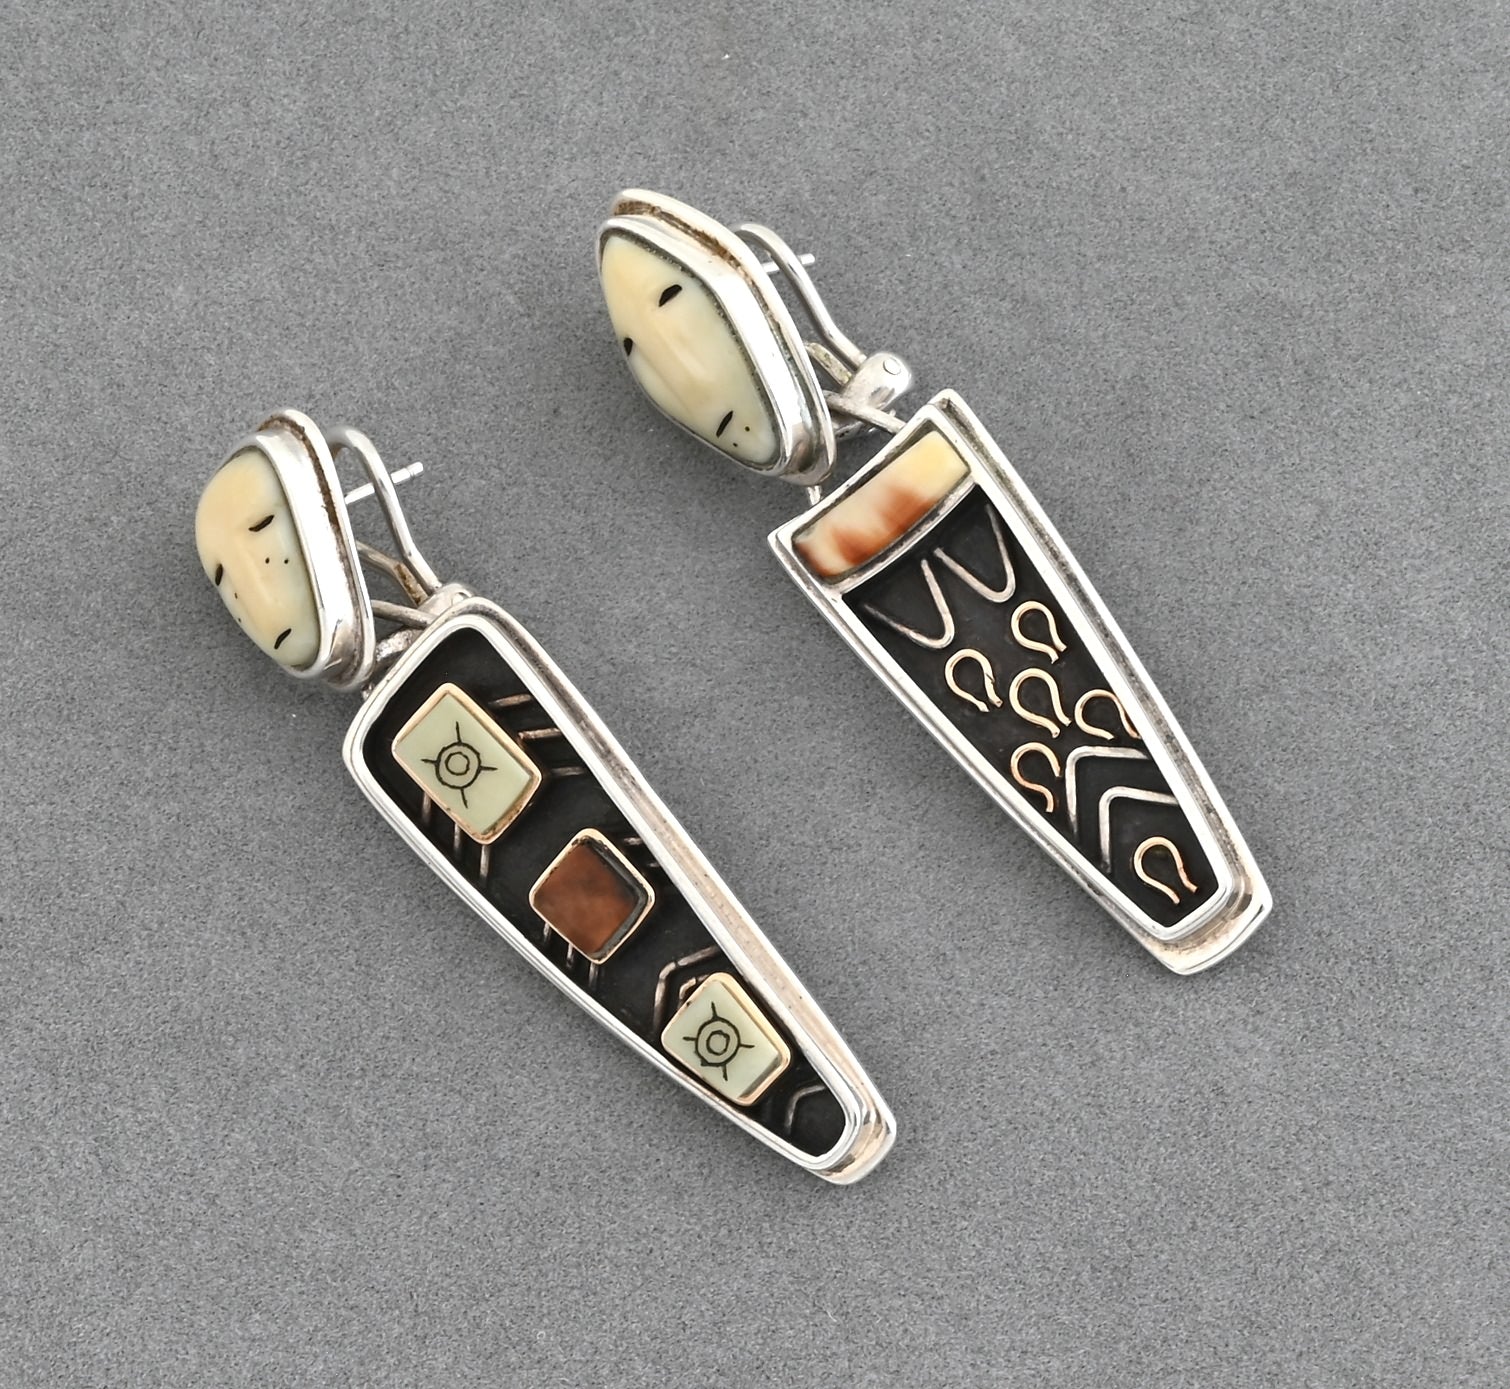 Old Bering Sea Earrings #34/100 Denise Wallace